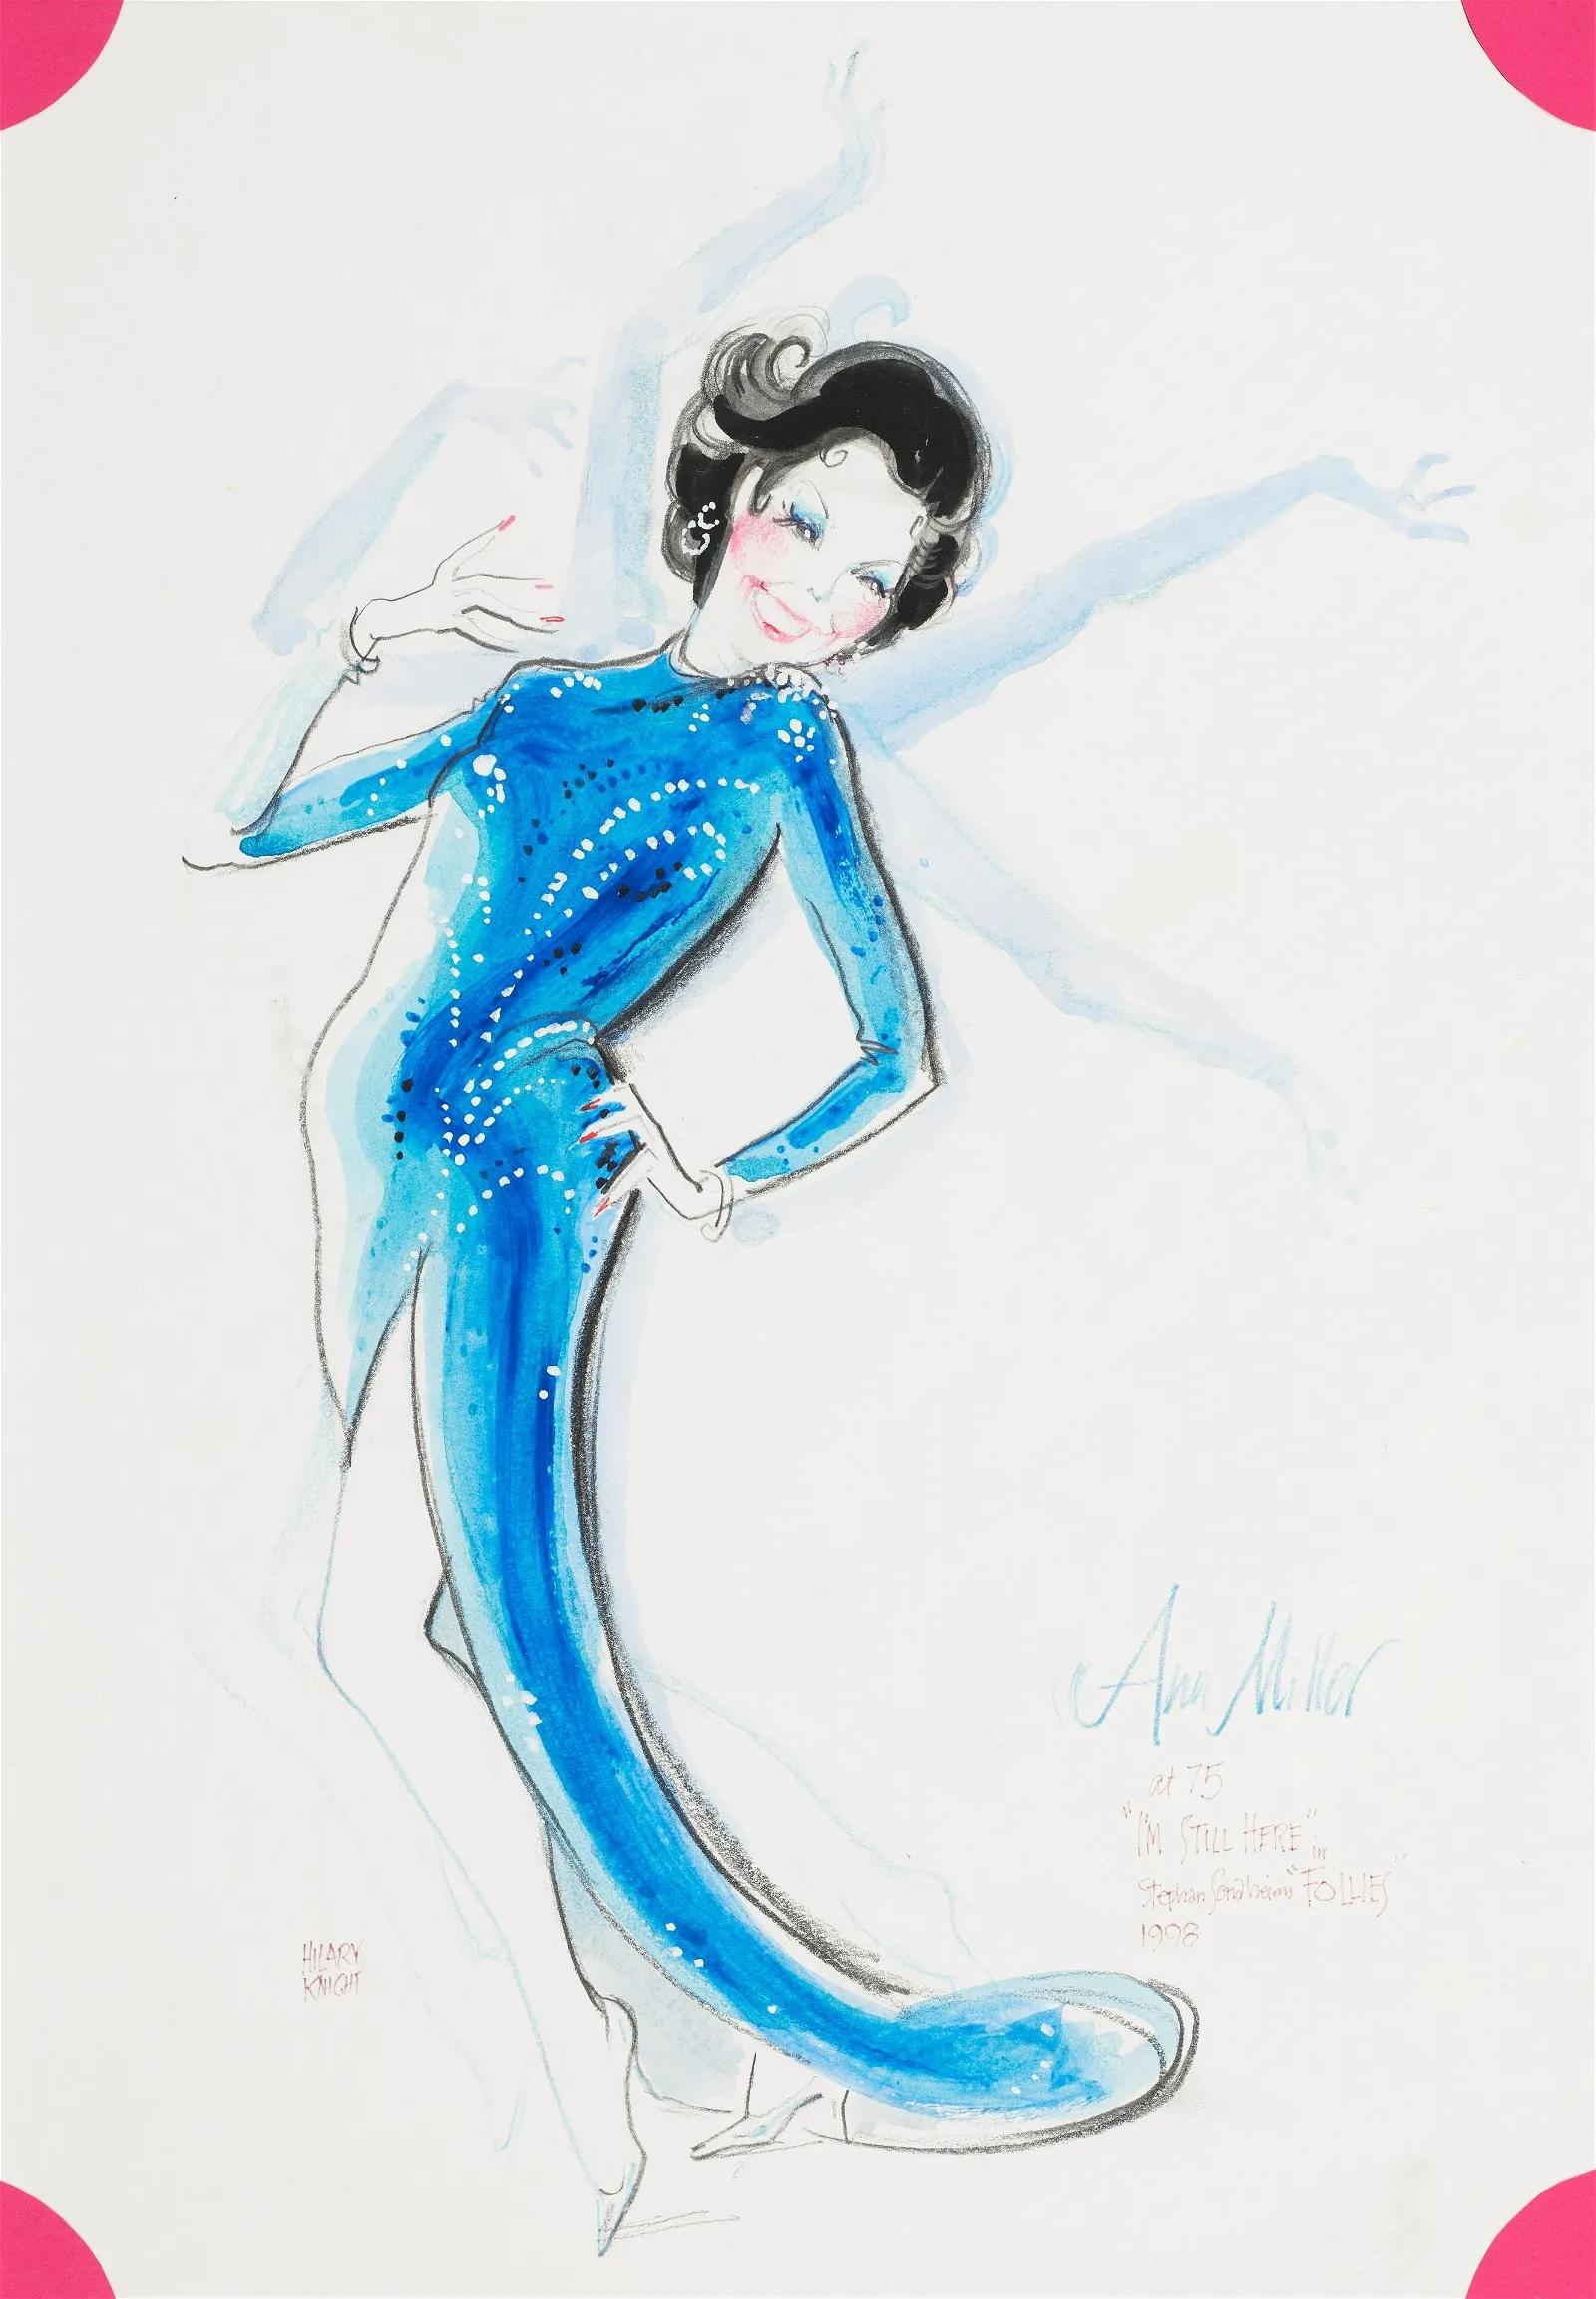 Ann Miller in Follies Broadway, Musik, zeitgenössische Zeichnung, Illustration Eloise